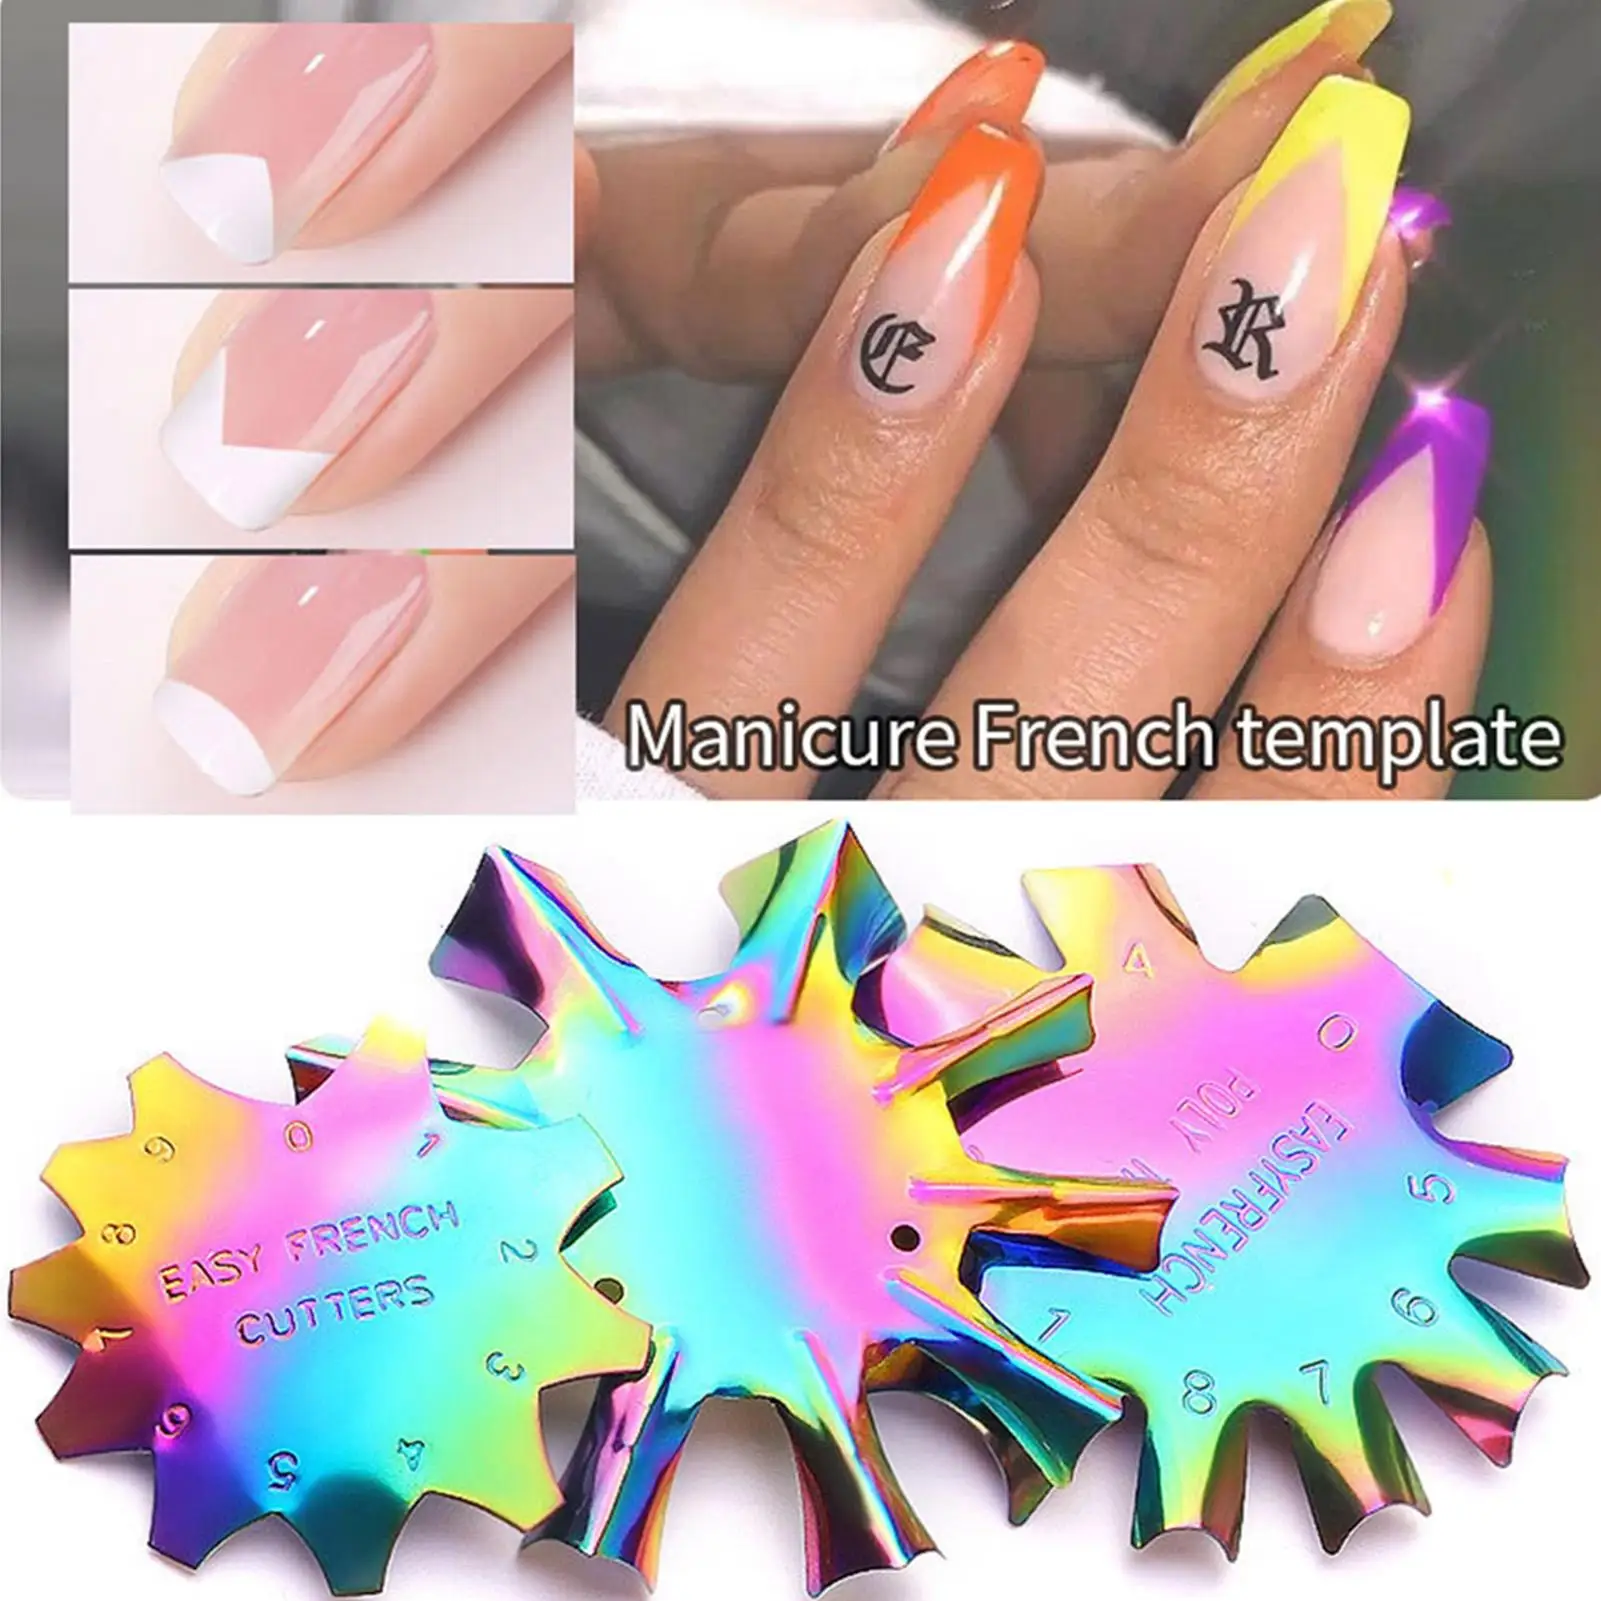 

Пластина для стемпинга ногтей маникюрный шаблон из нержавеющей стали дизайн ногтей Французский маникюрный лак пластина для моделирования